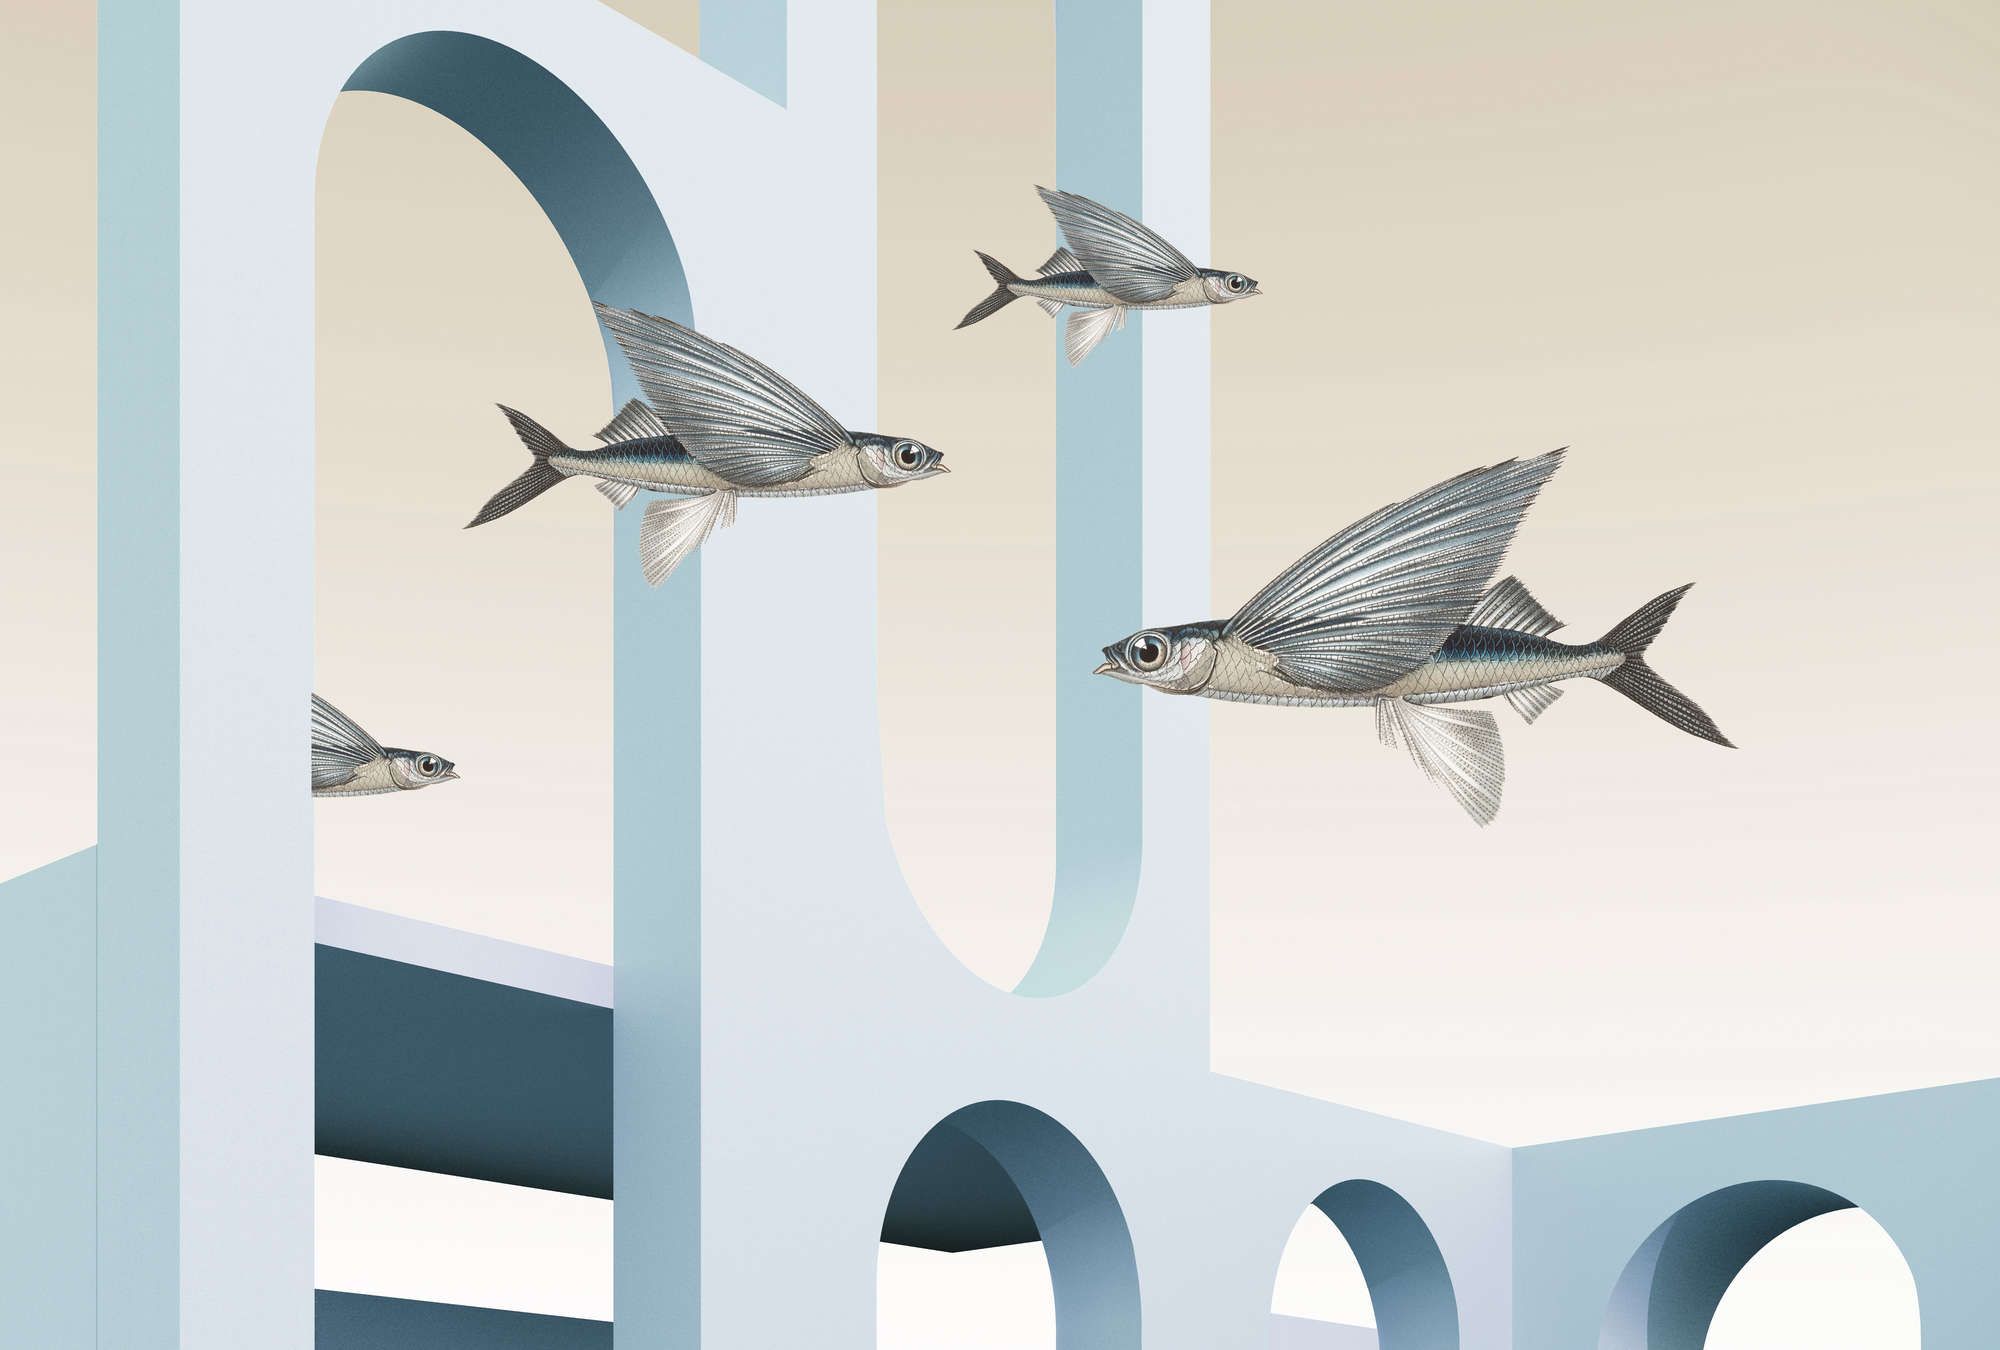             styx - Fotomural con arquitectura abstracta en 3D y peces voladores - tela no tejida lisa mate
        